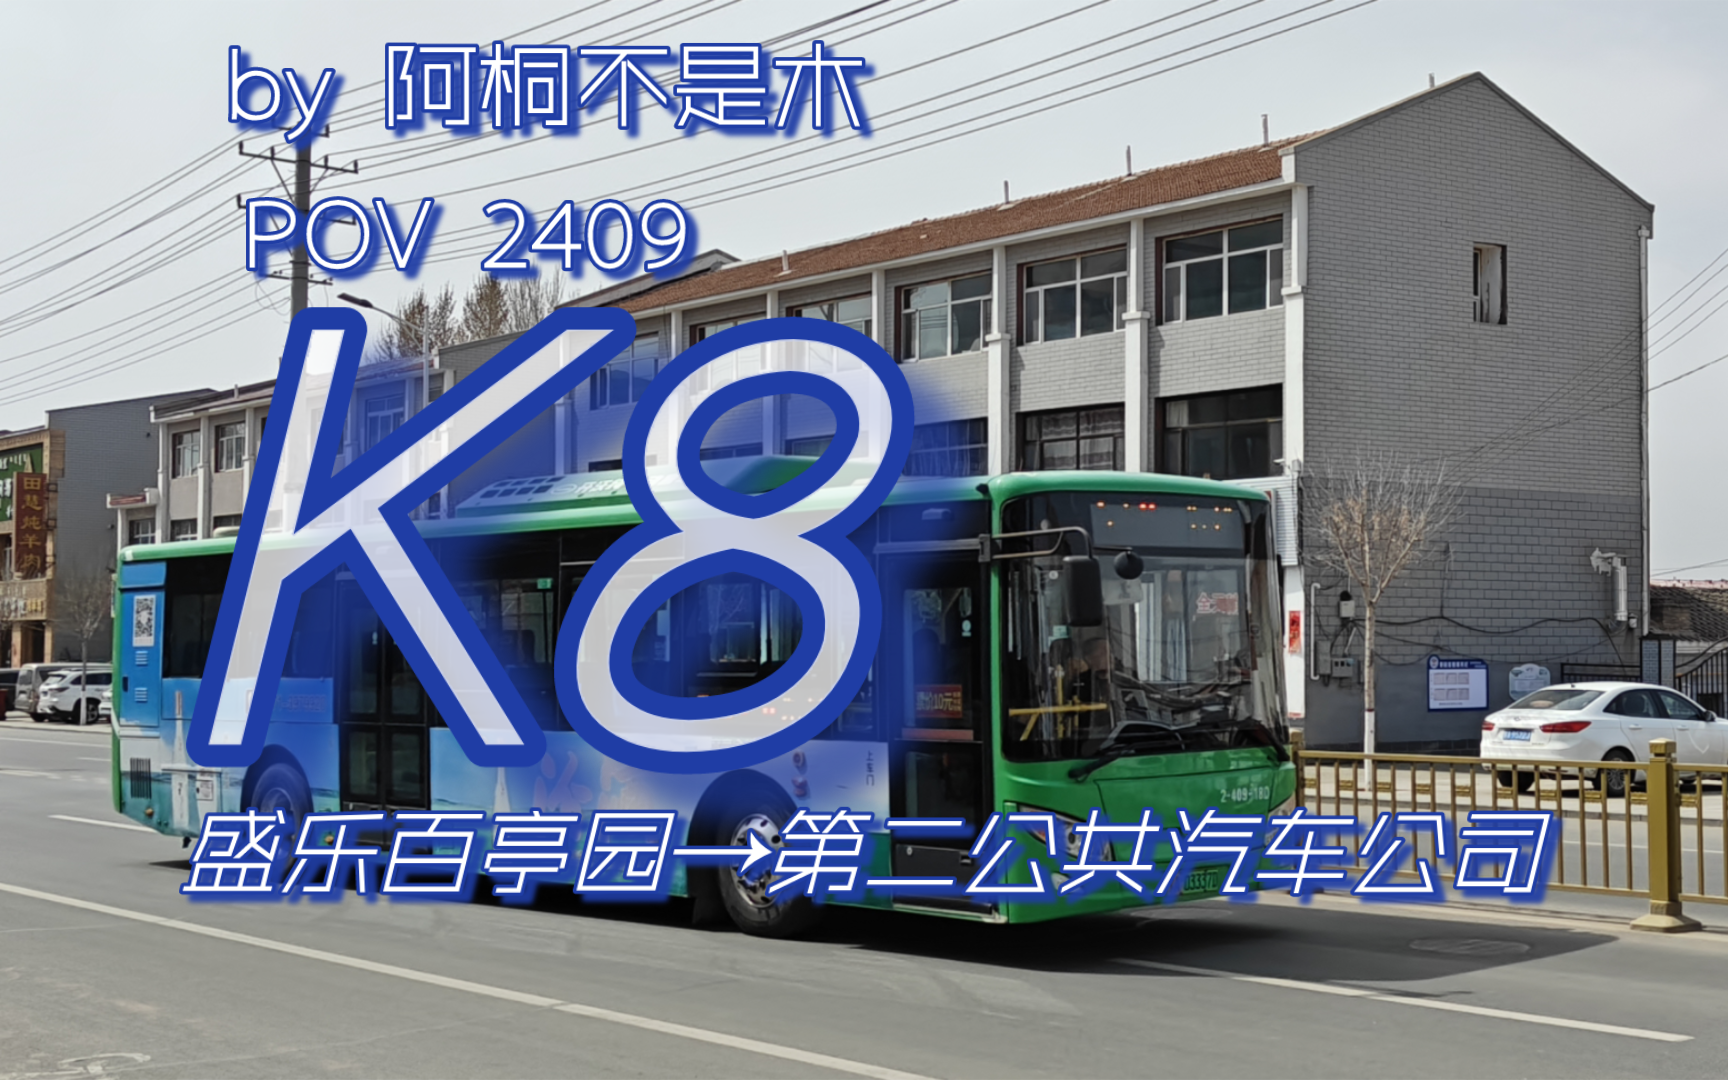 [2409]市区和林一线牵丨呼和浩特公交k8路(盛乐百亭园→第二公共汽车